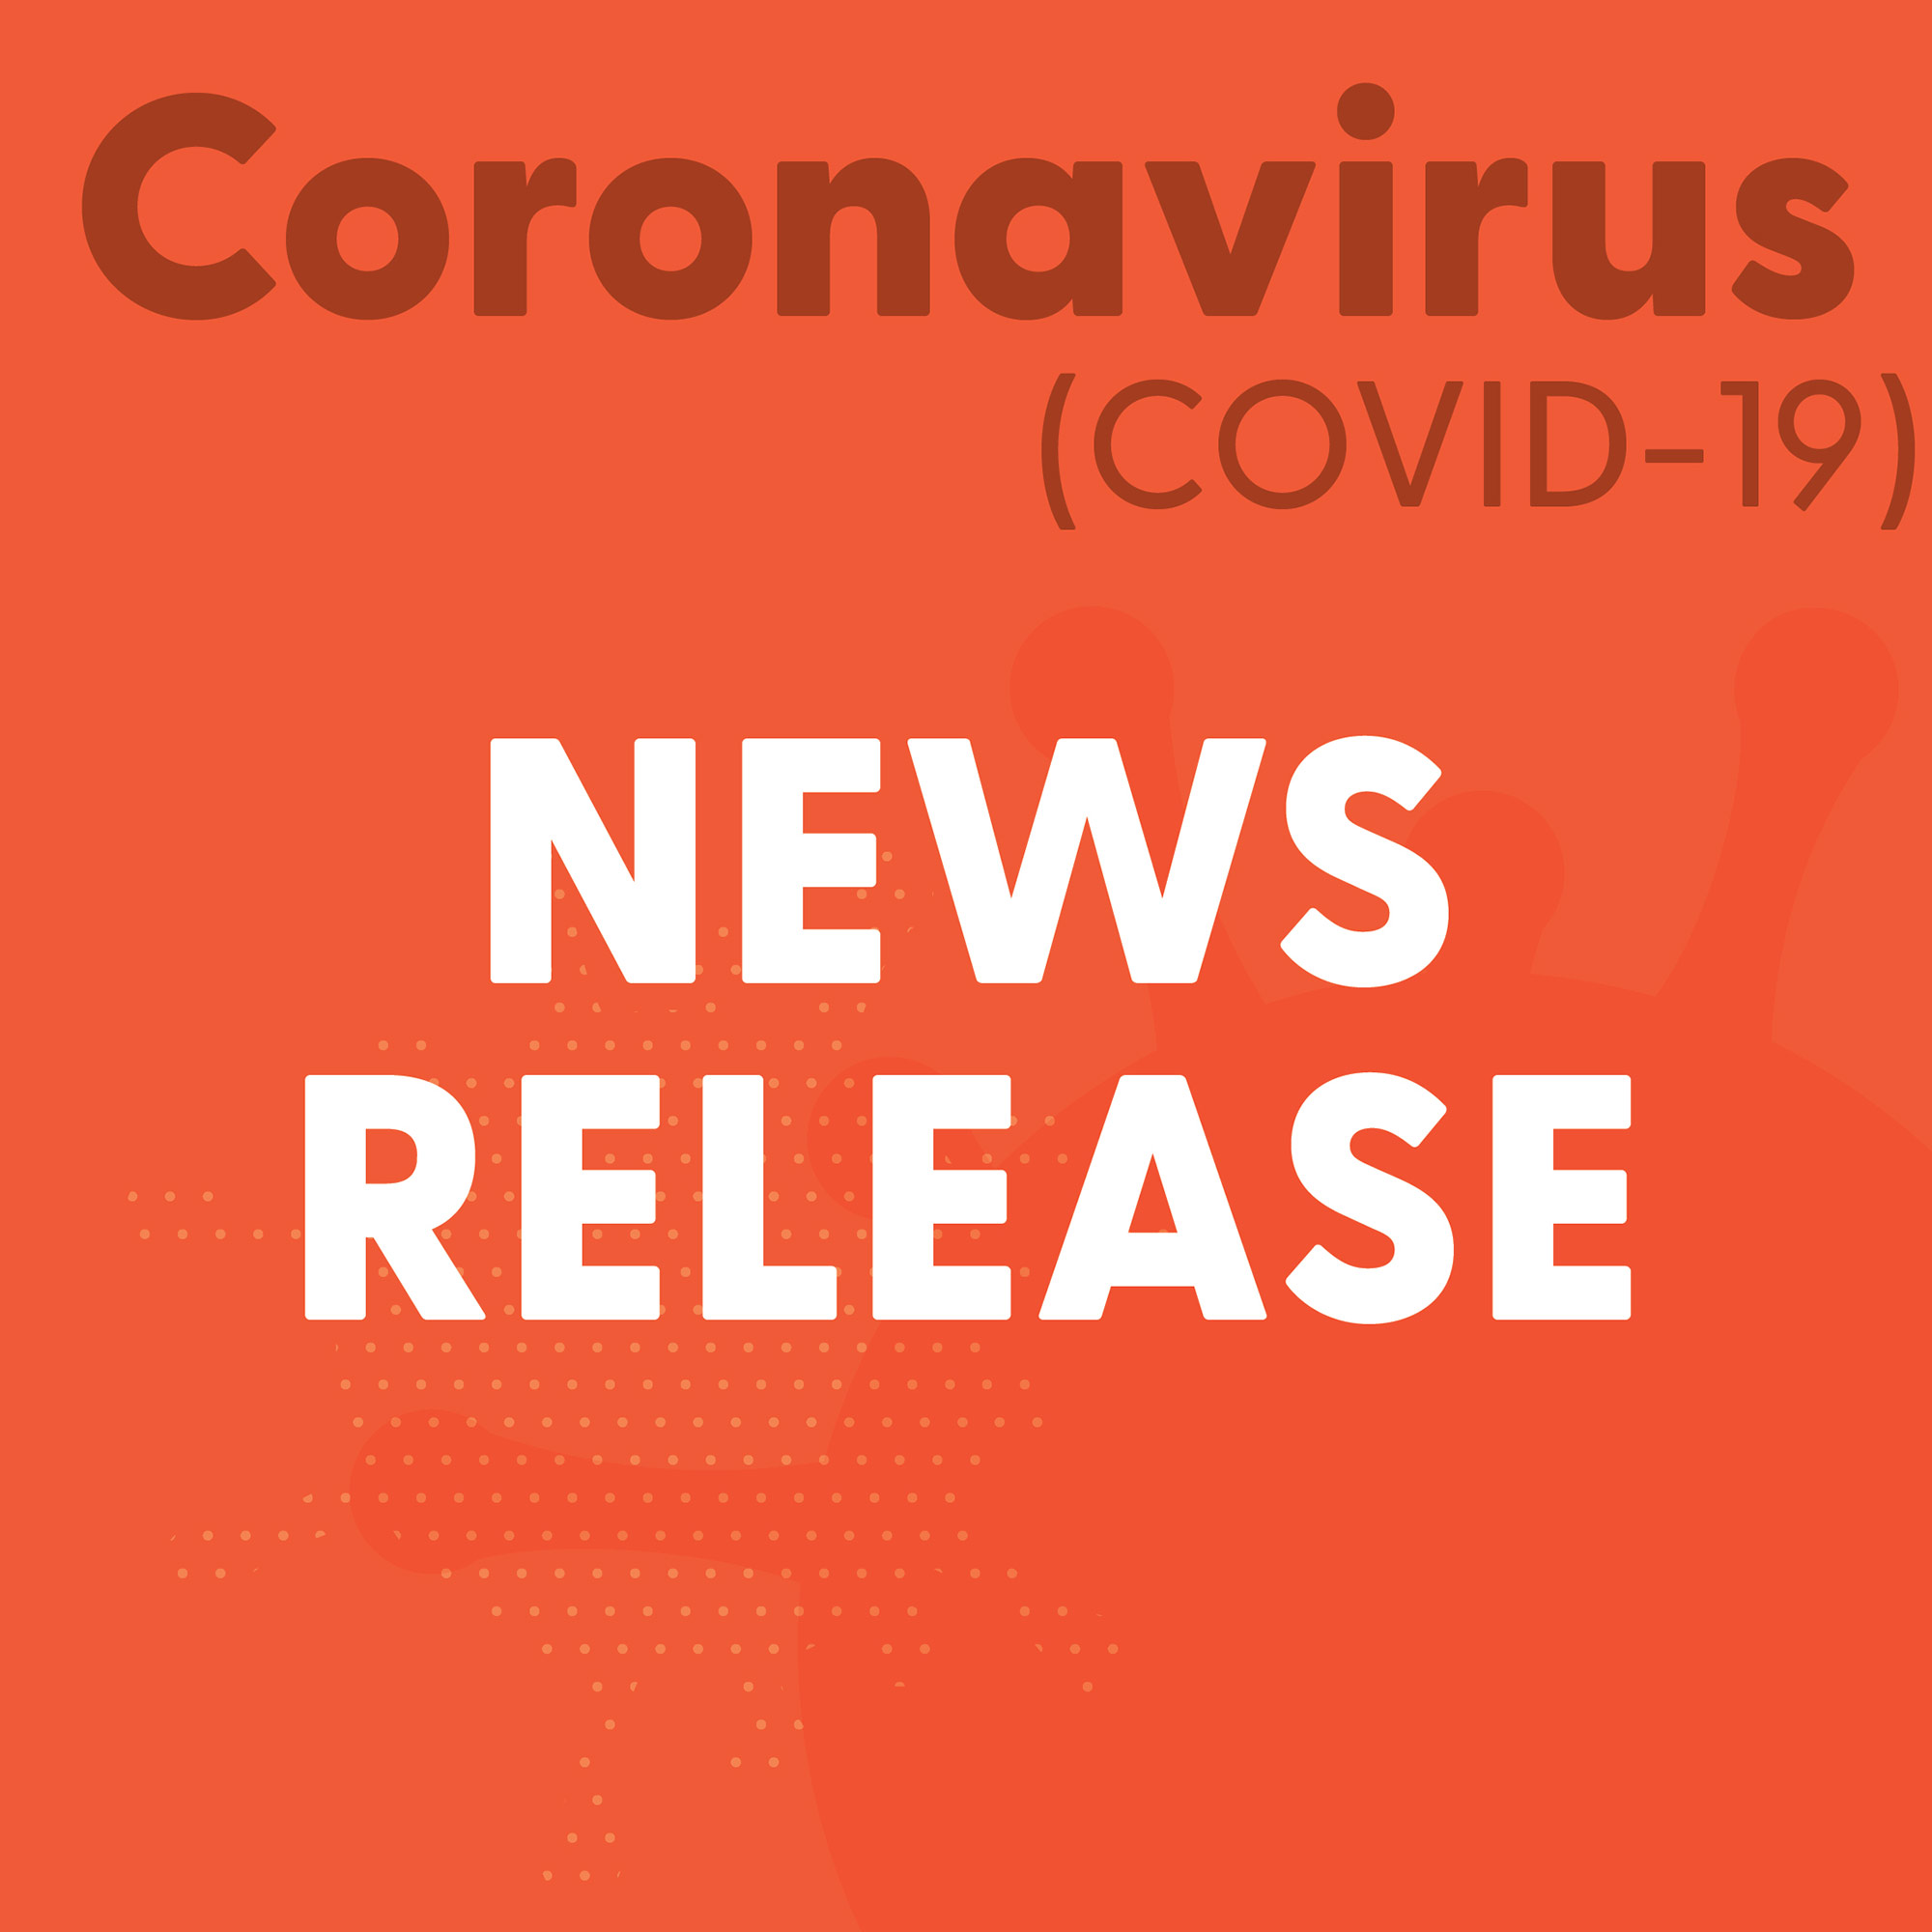 COVID-19 News Release (Orange)